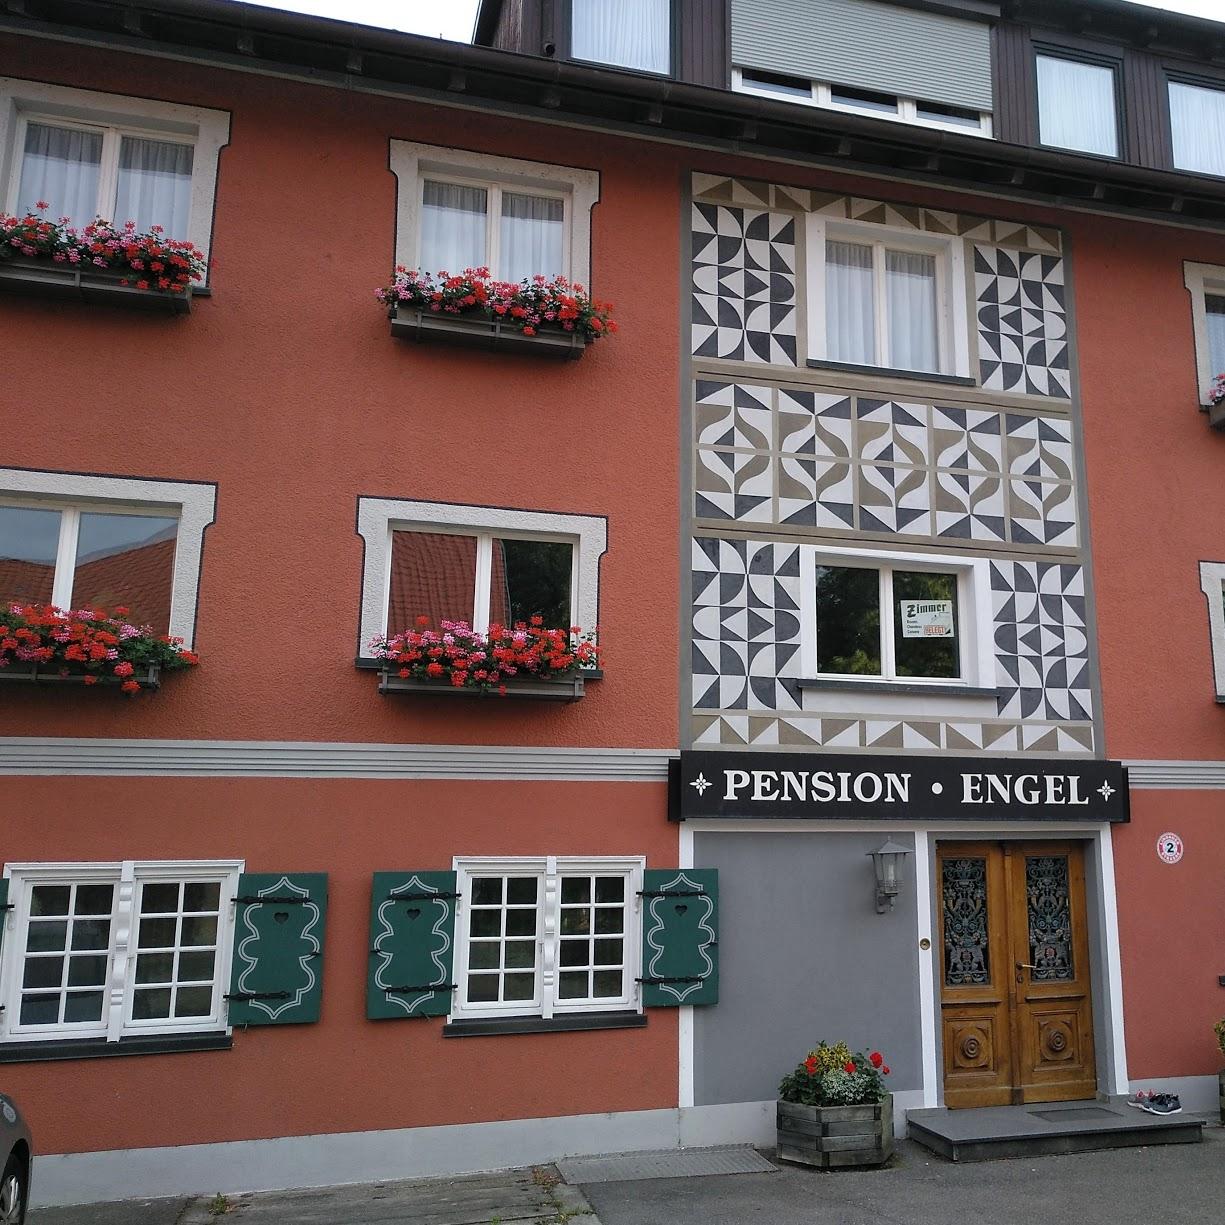 Restaurant "Gasthaus Engel" in  Bodensee